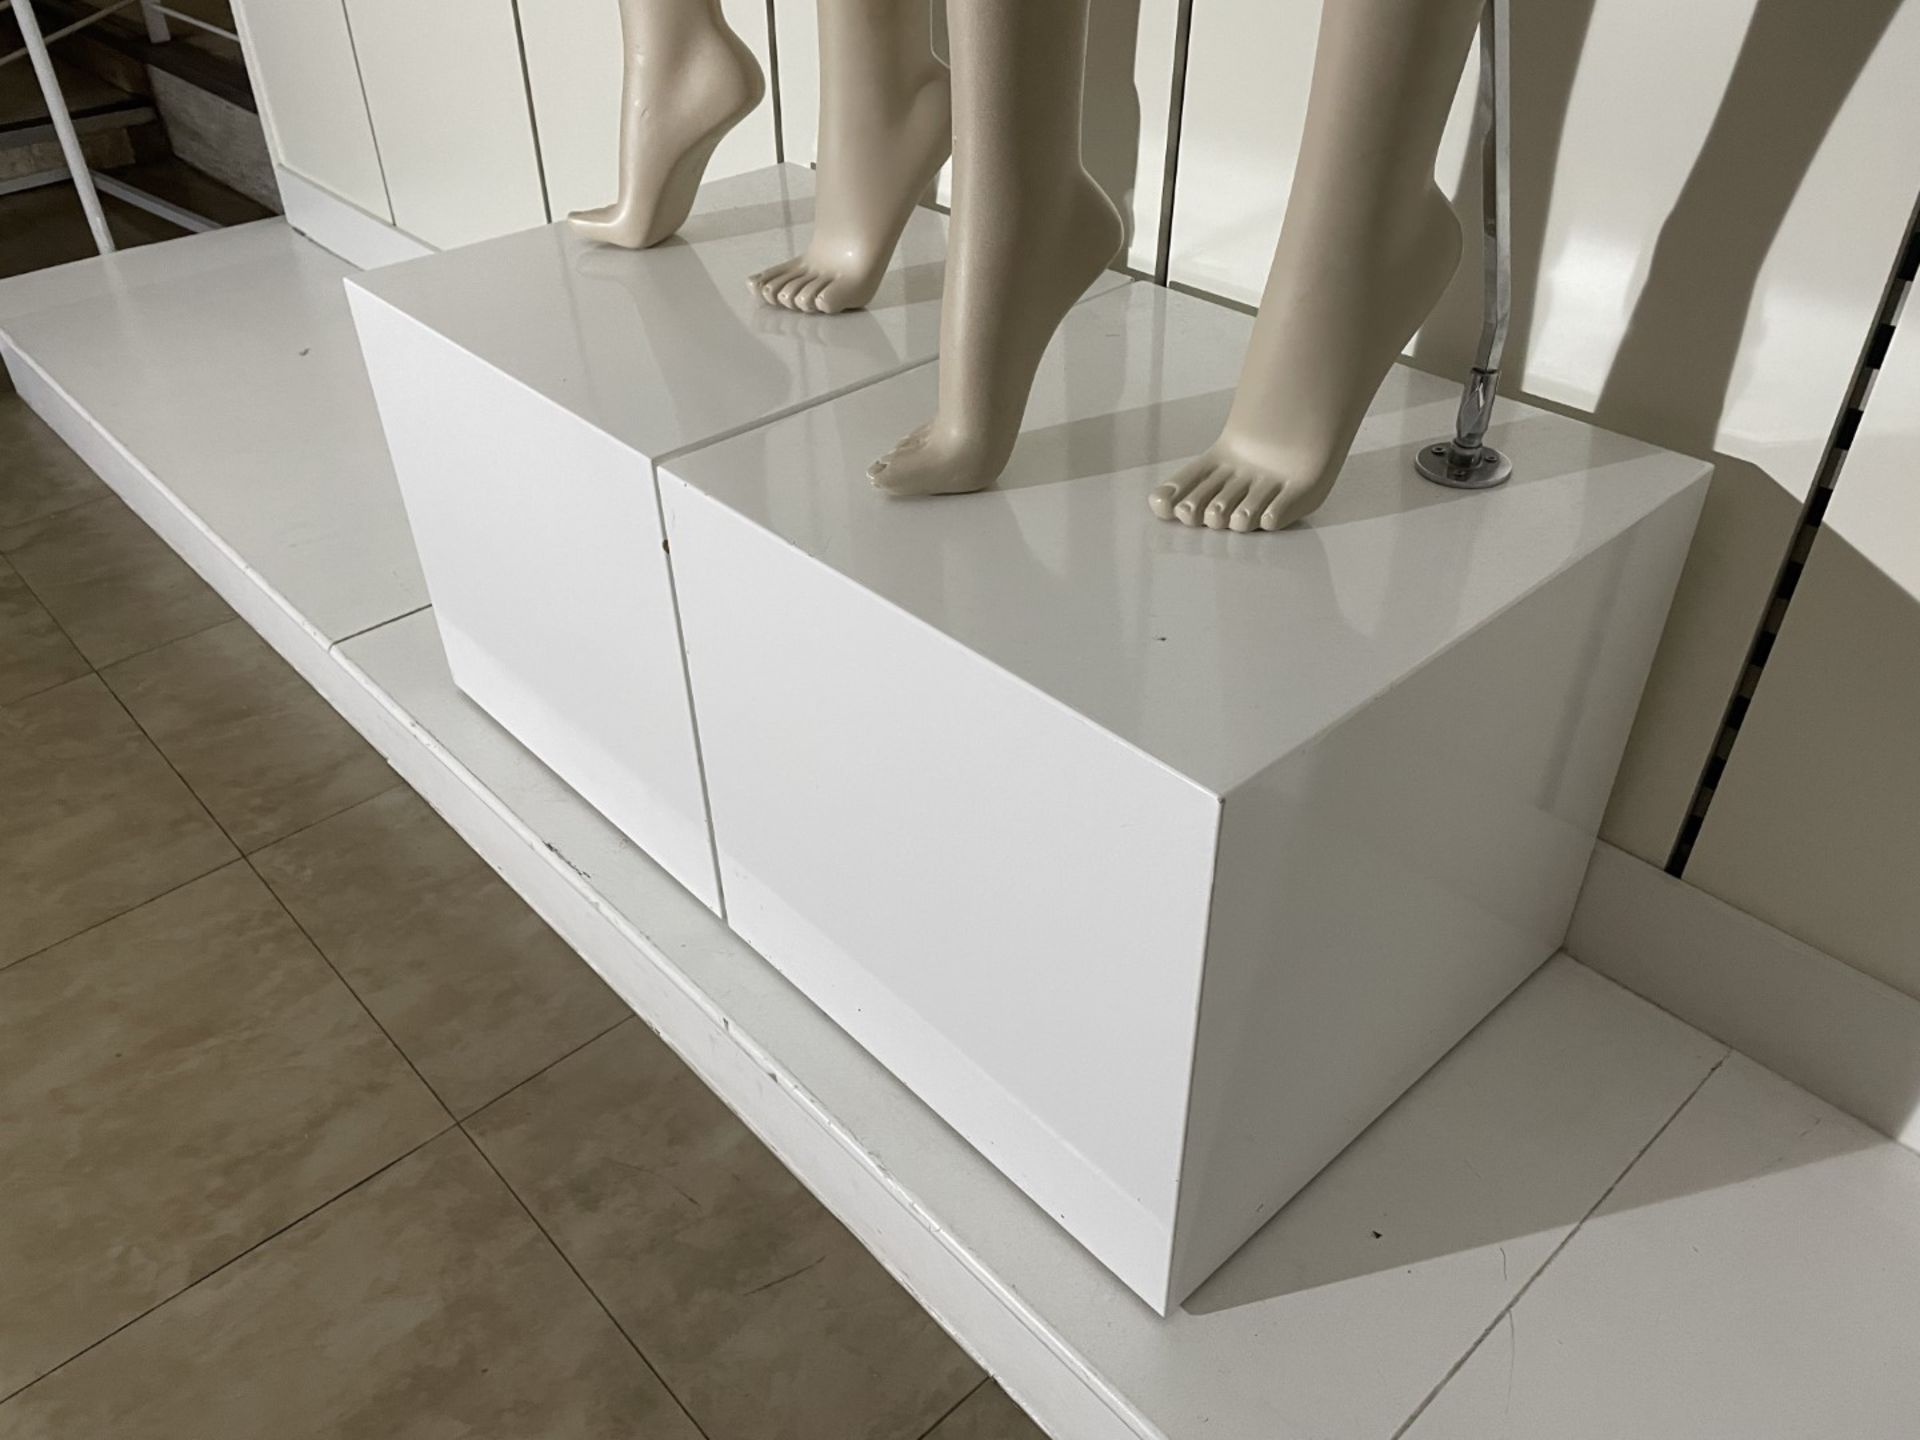 2 x Full Size Female Mannequins on Pedestal Plinth Stands - CL670 - Ref: GEM236 - Location: - Image 11 of 11